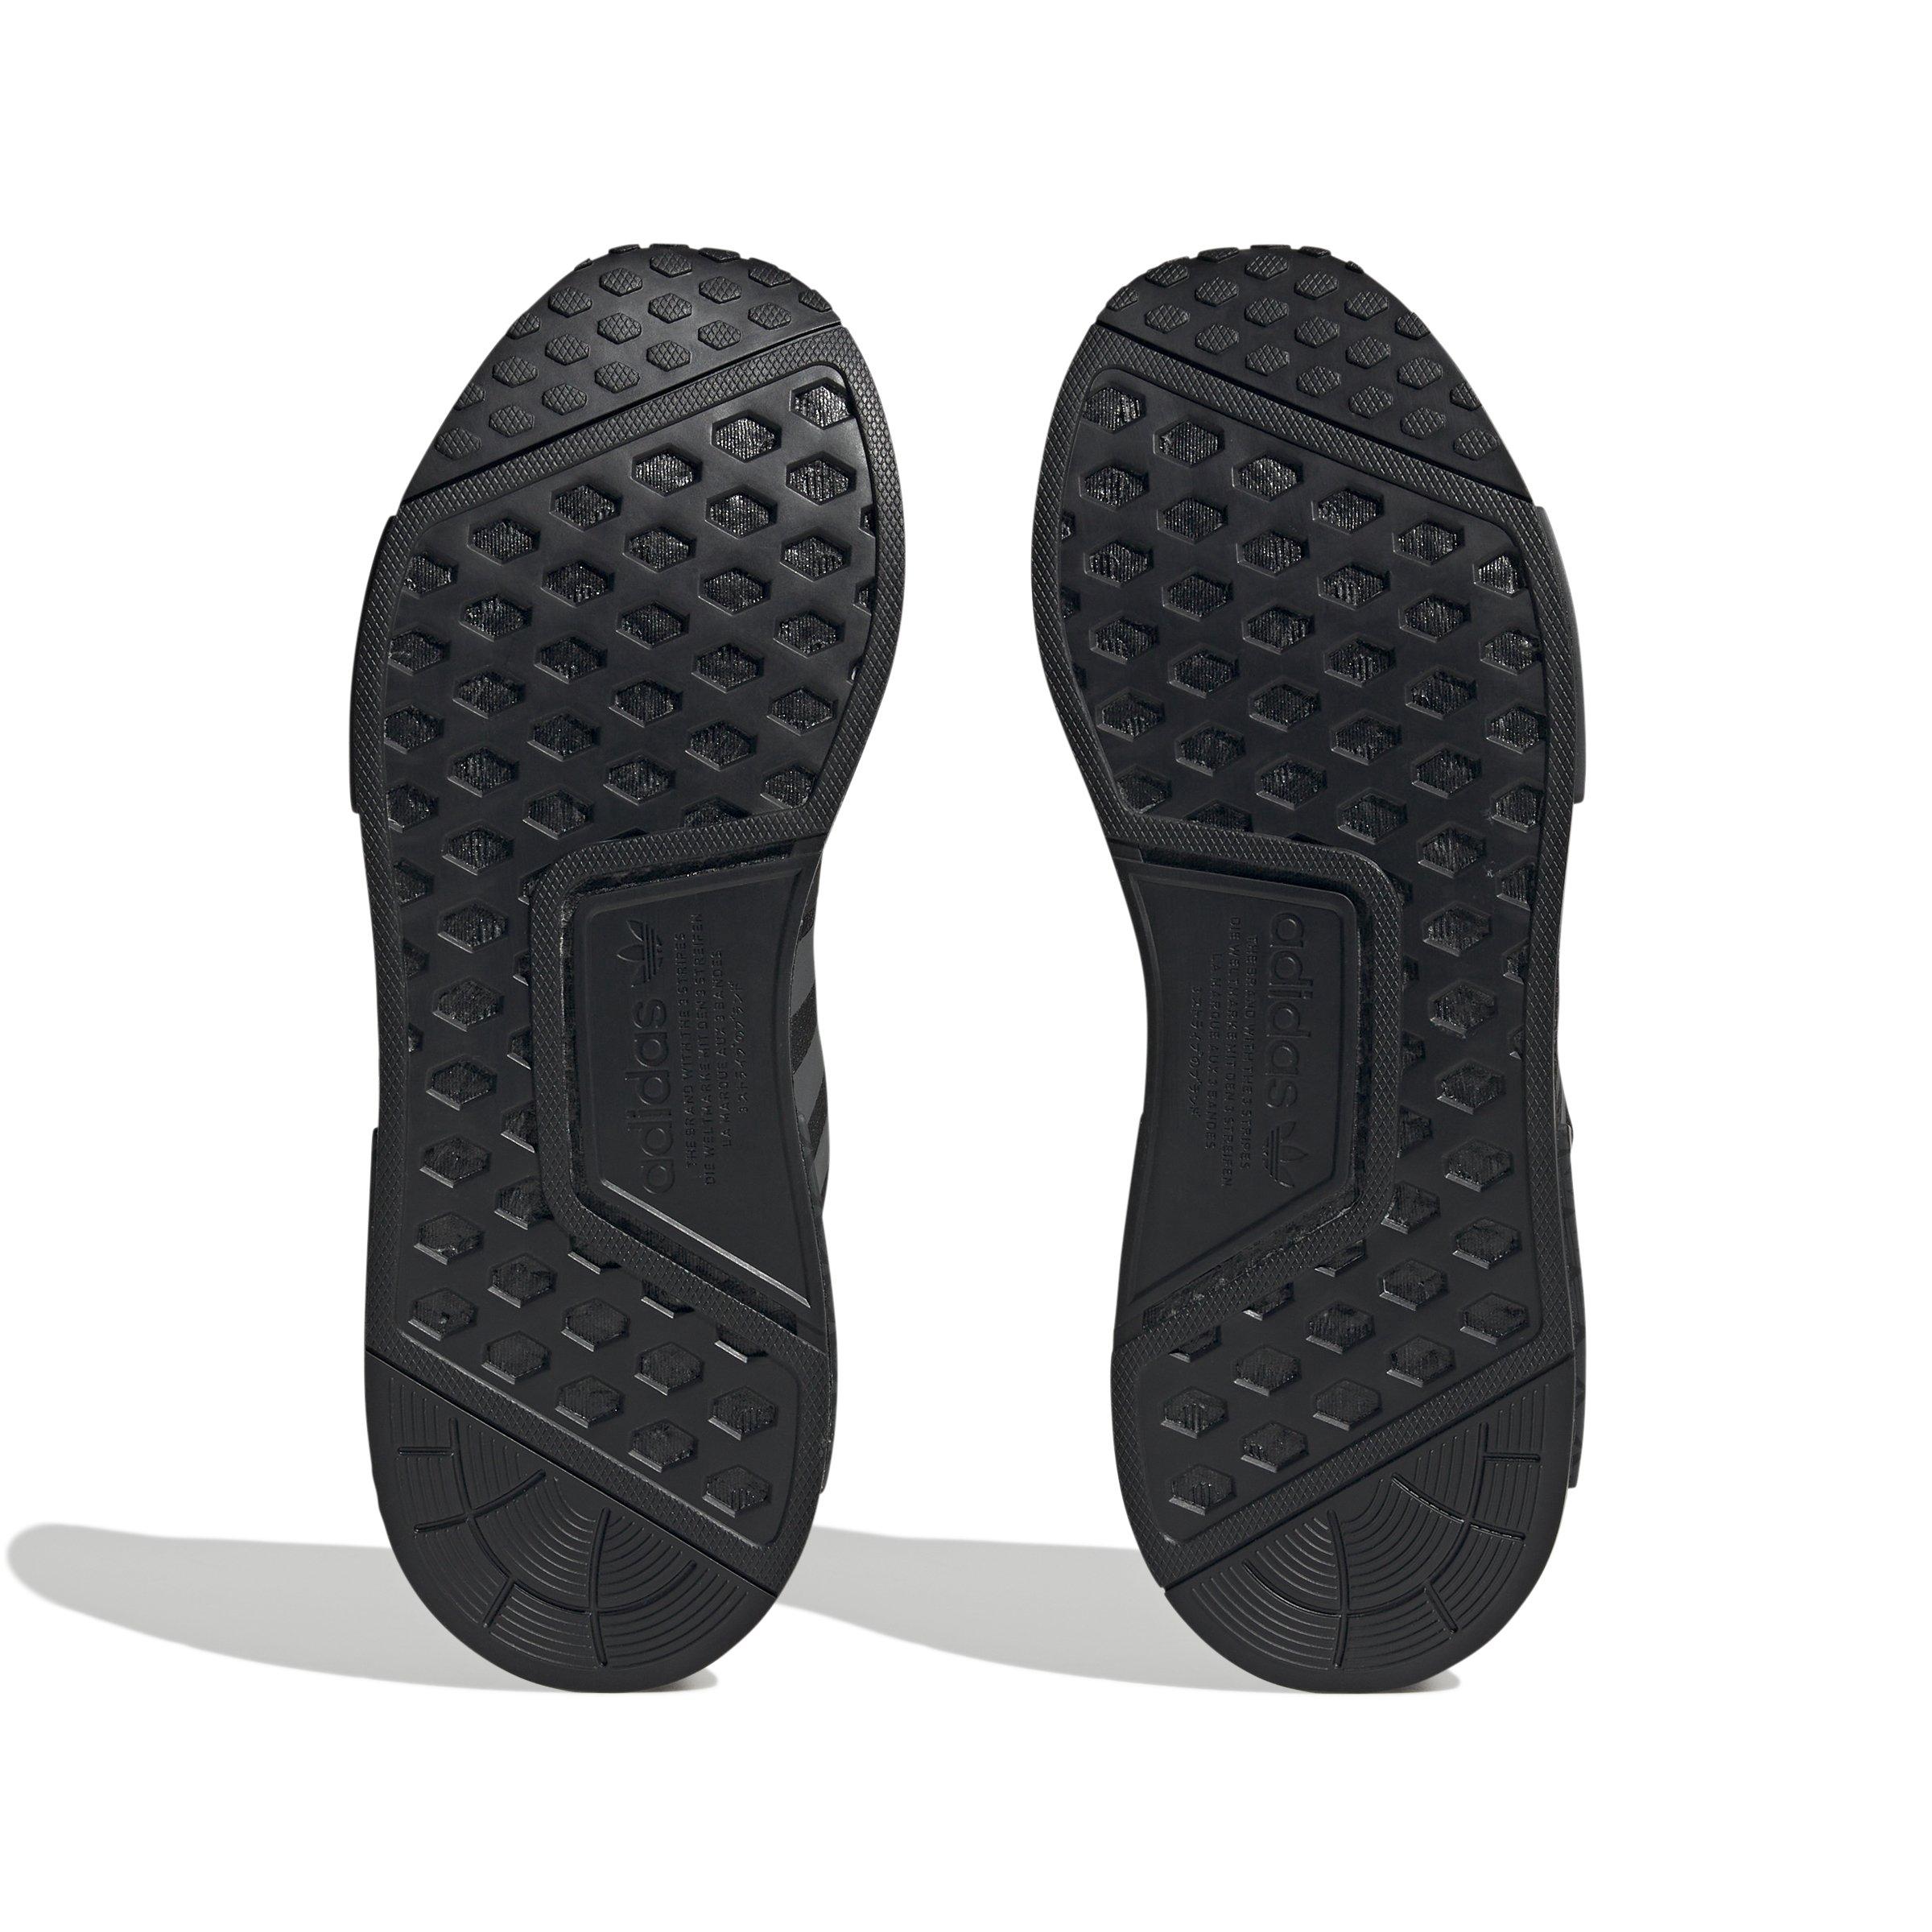 Men's Adidas NMD_R1 (Core Black) Shoes HQ4452 CHOOSE SIZE.